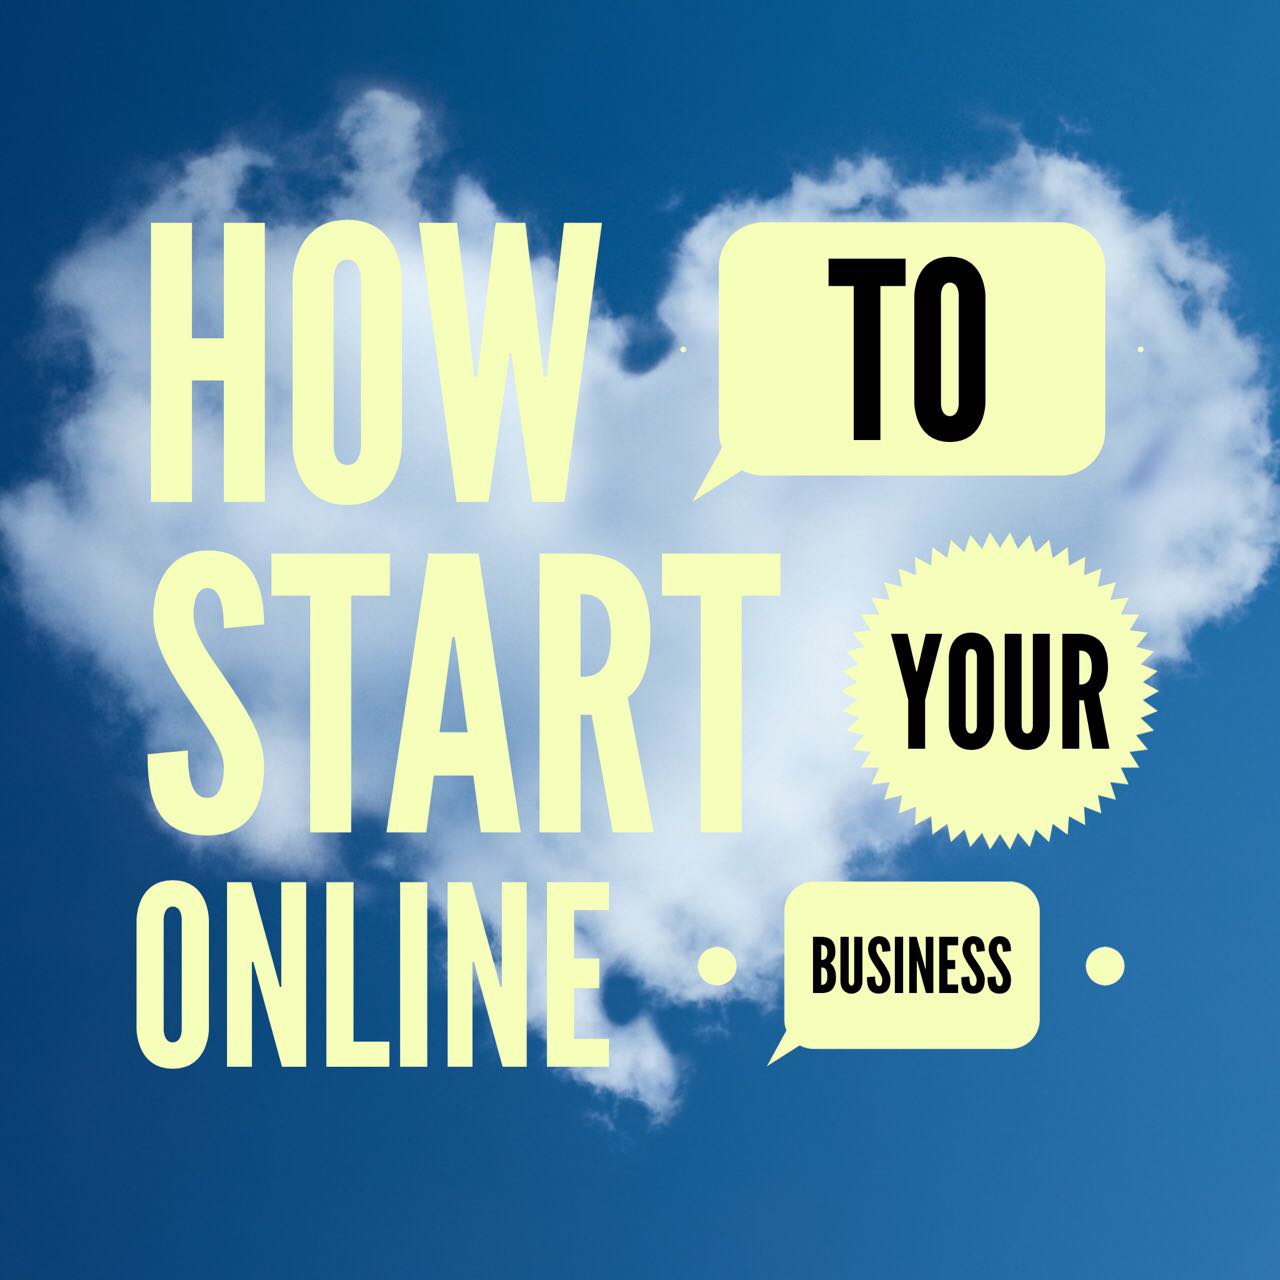 Start online business, Philippines.